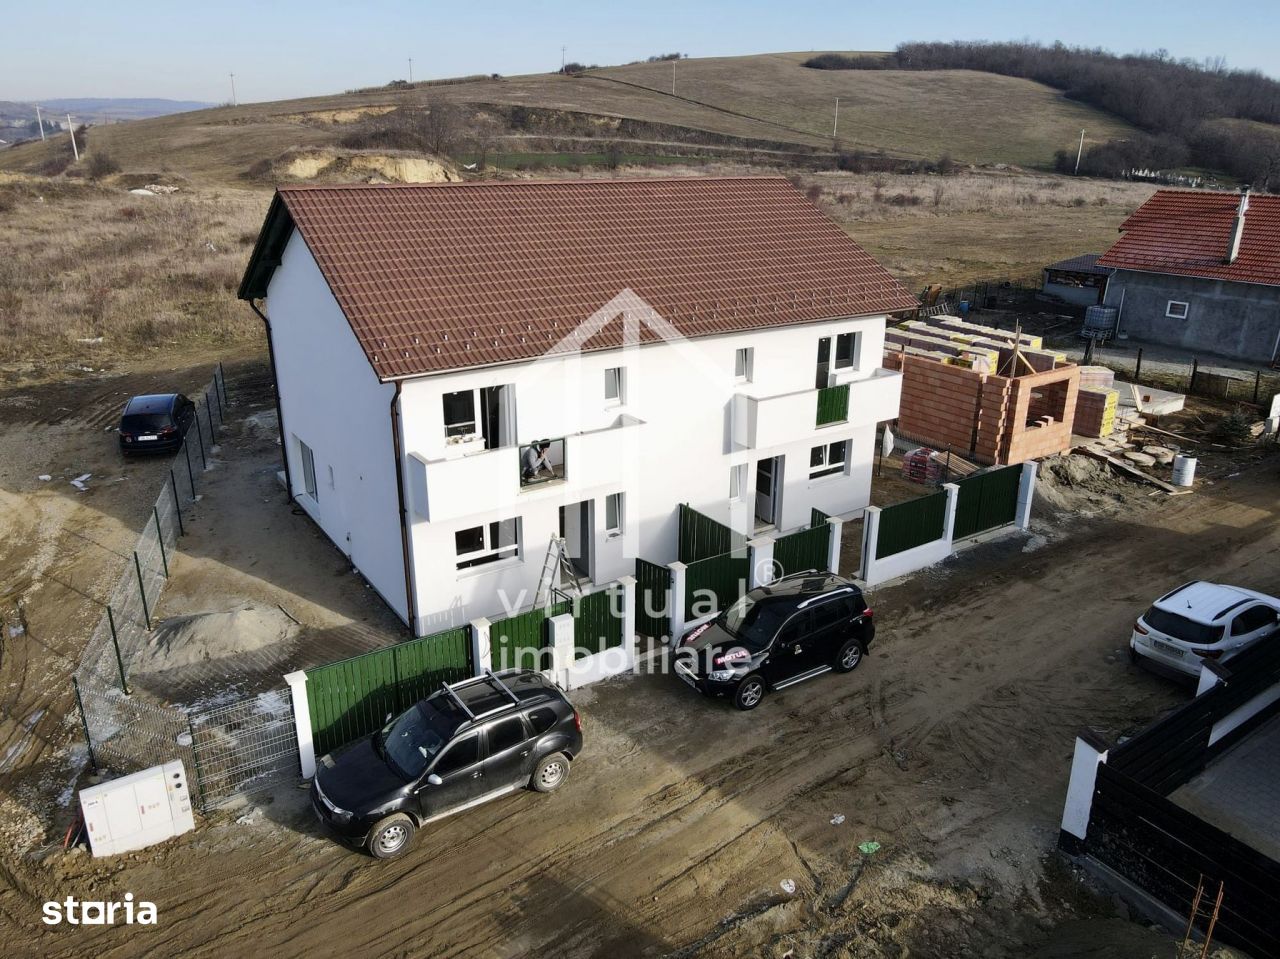 Duplex de vanzare in Sibiu la CHEIE - 107 mp utili.